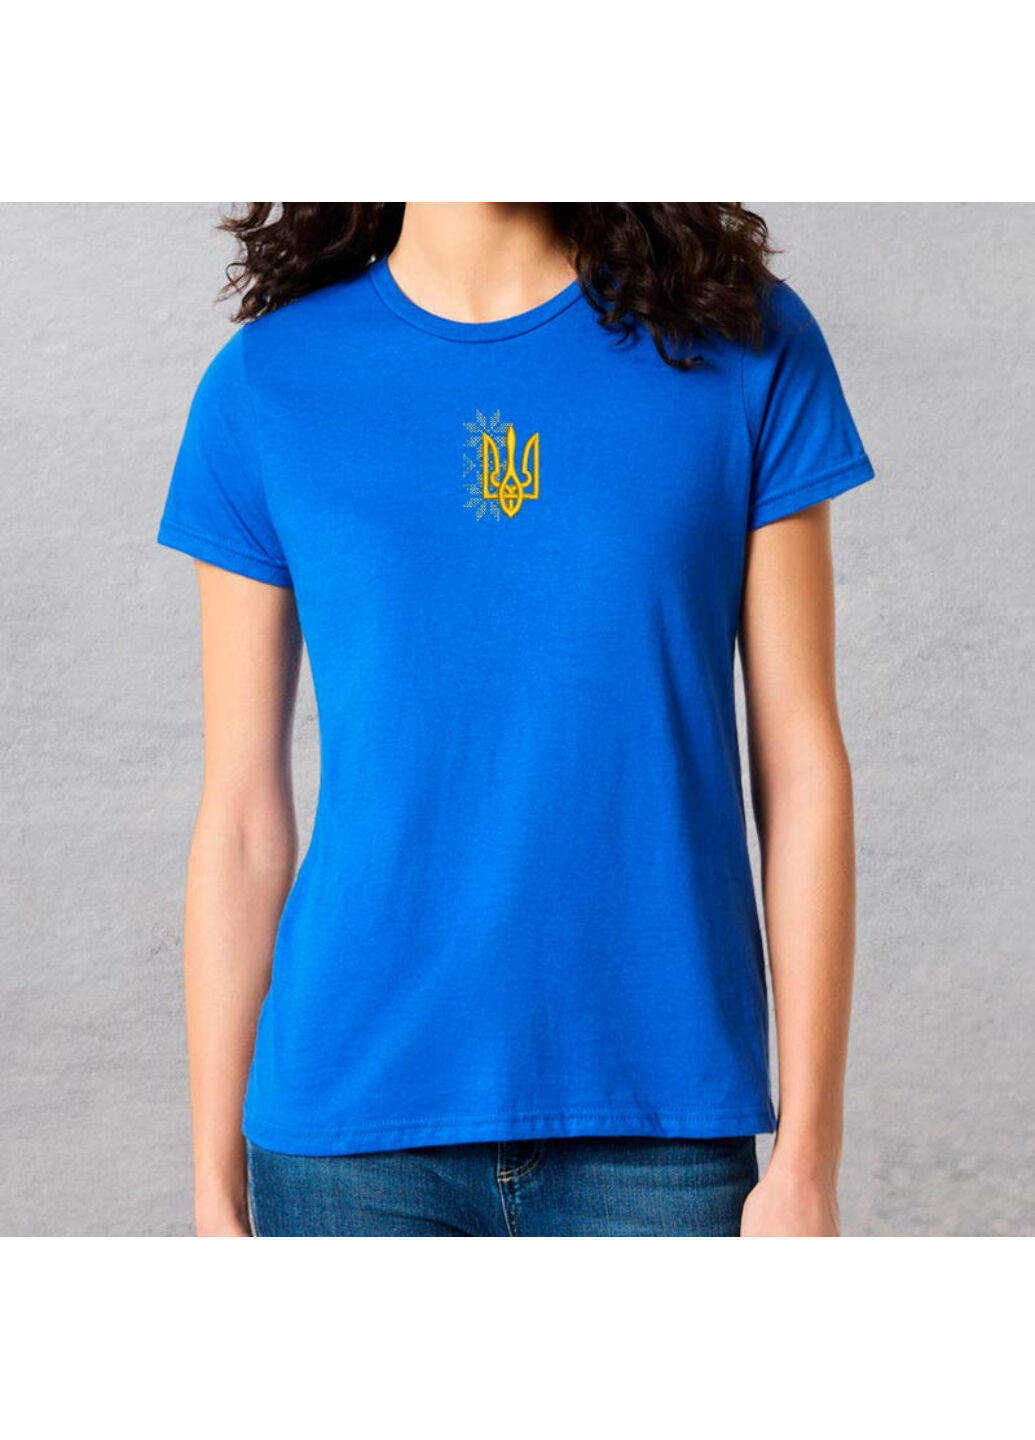 Синя футболка з вишивкою тризуба 02-3 жіноча синій m No Brand